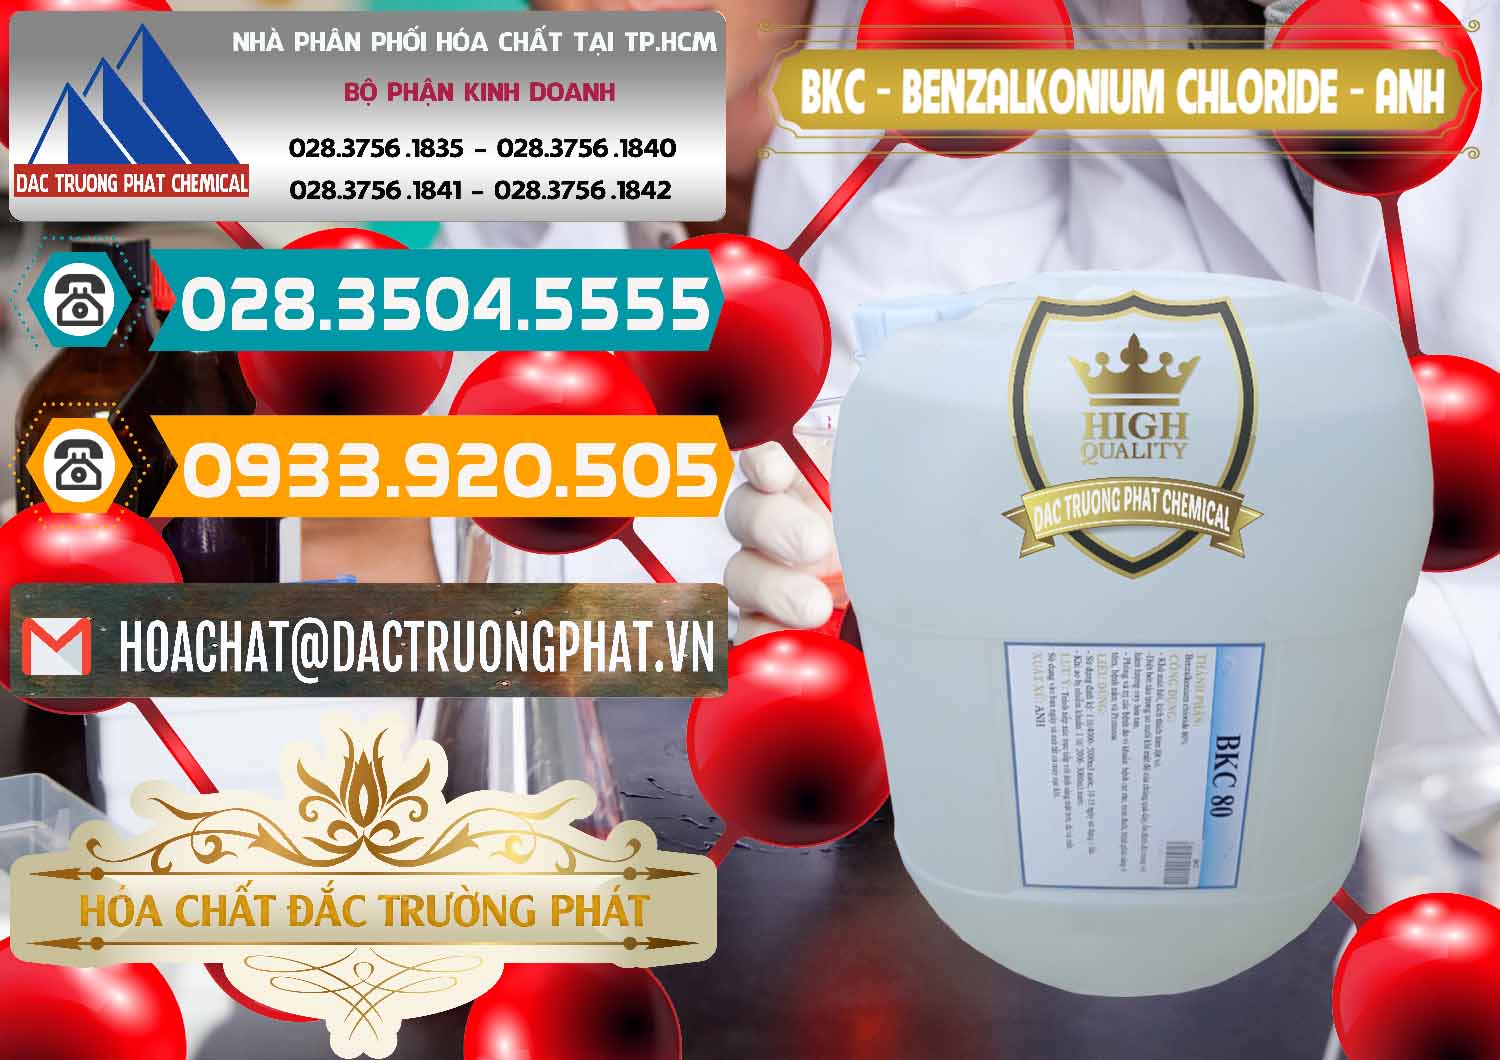 Kinh doanh & bán BKC - Benzalkonium Chloride Anh Quốc Uk Kingdoms - 0415 - Cty phân phối ( cung cấp ) hóa chất tại TP.HCM - congtyhoachat.vn